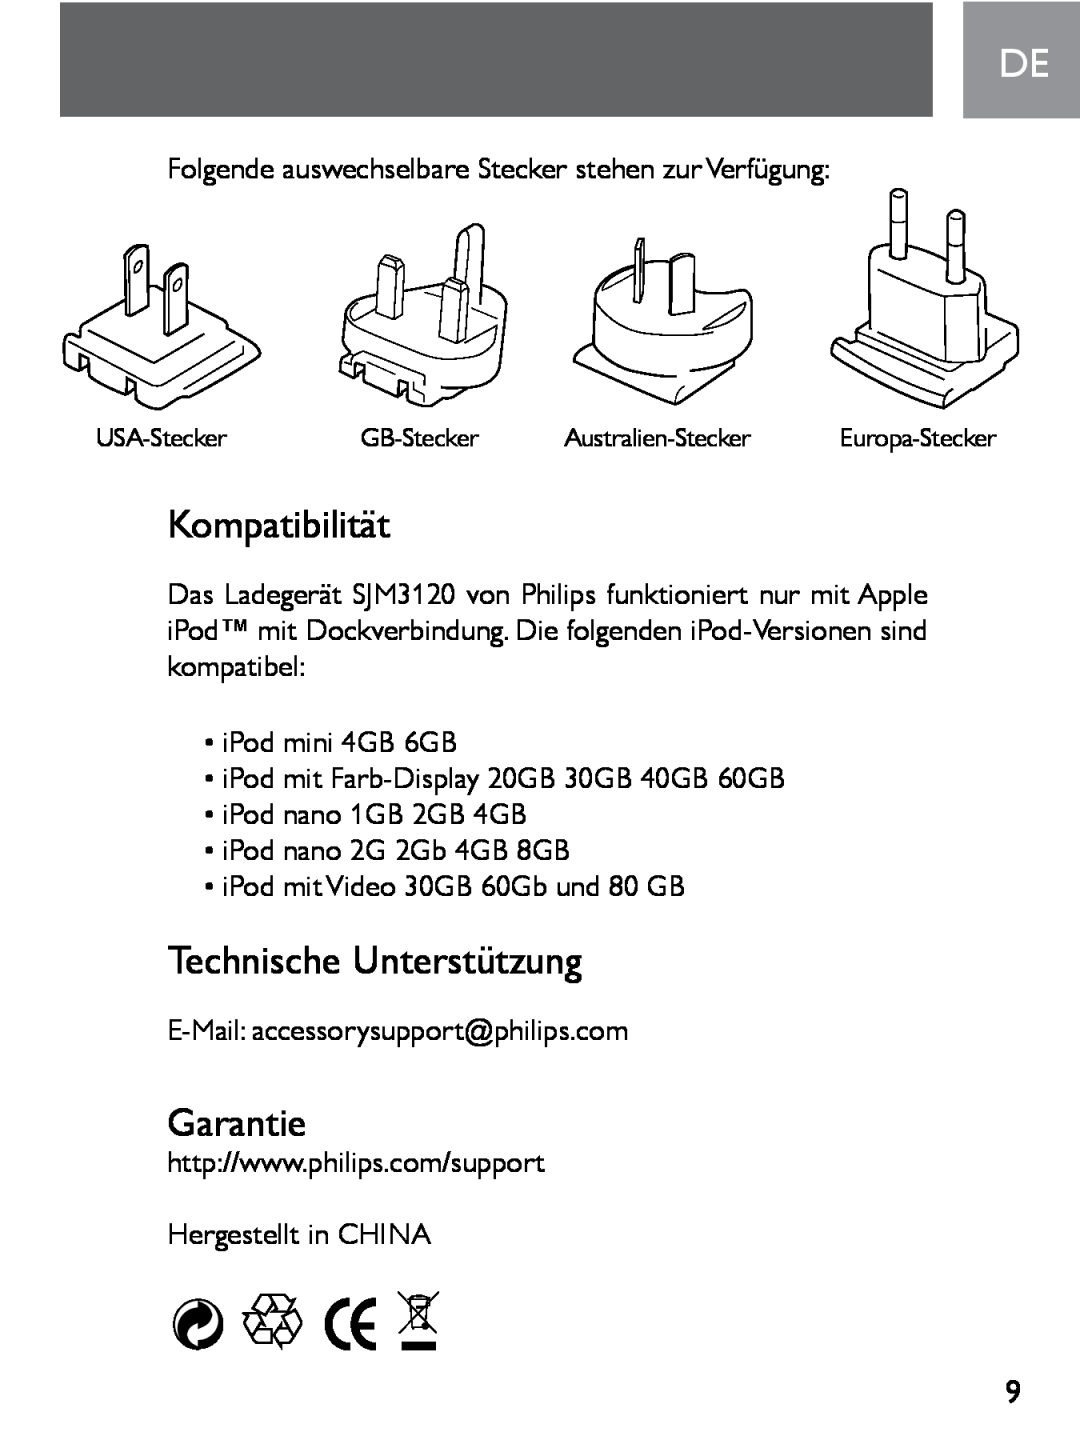 Philips SJM3120 user manual Kompatibilität, Technische Unterstützung, Garantie, USA-Stecker, GB-Stecker, Australien-Stecker 